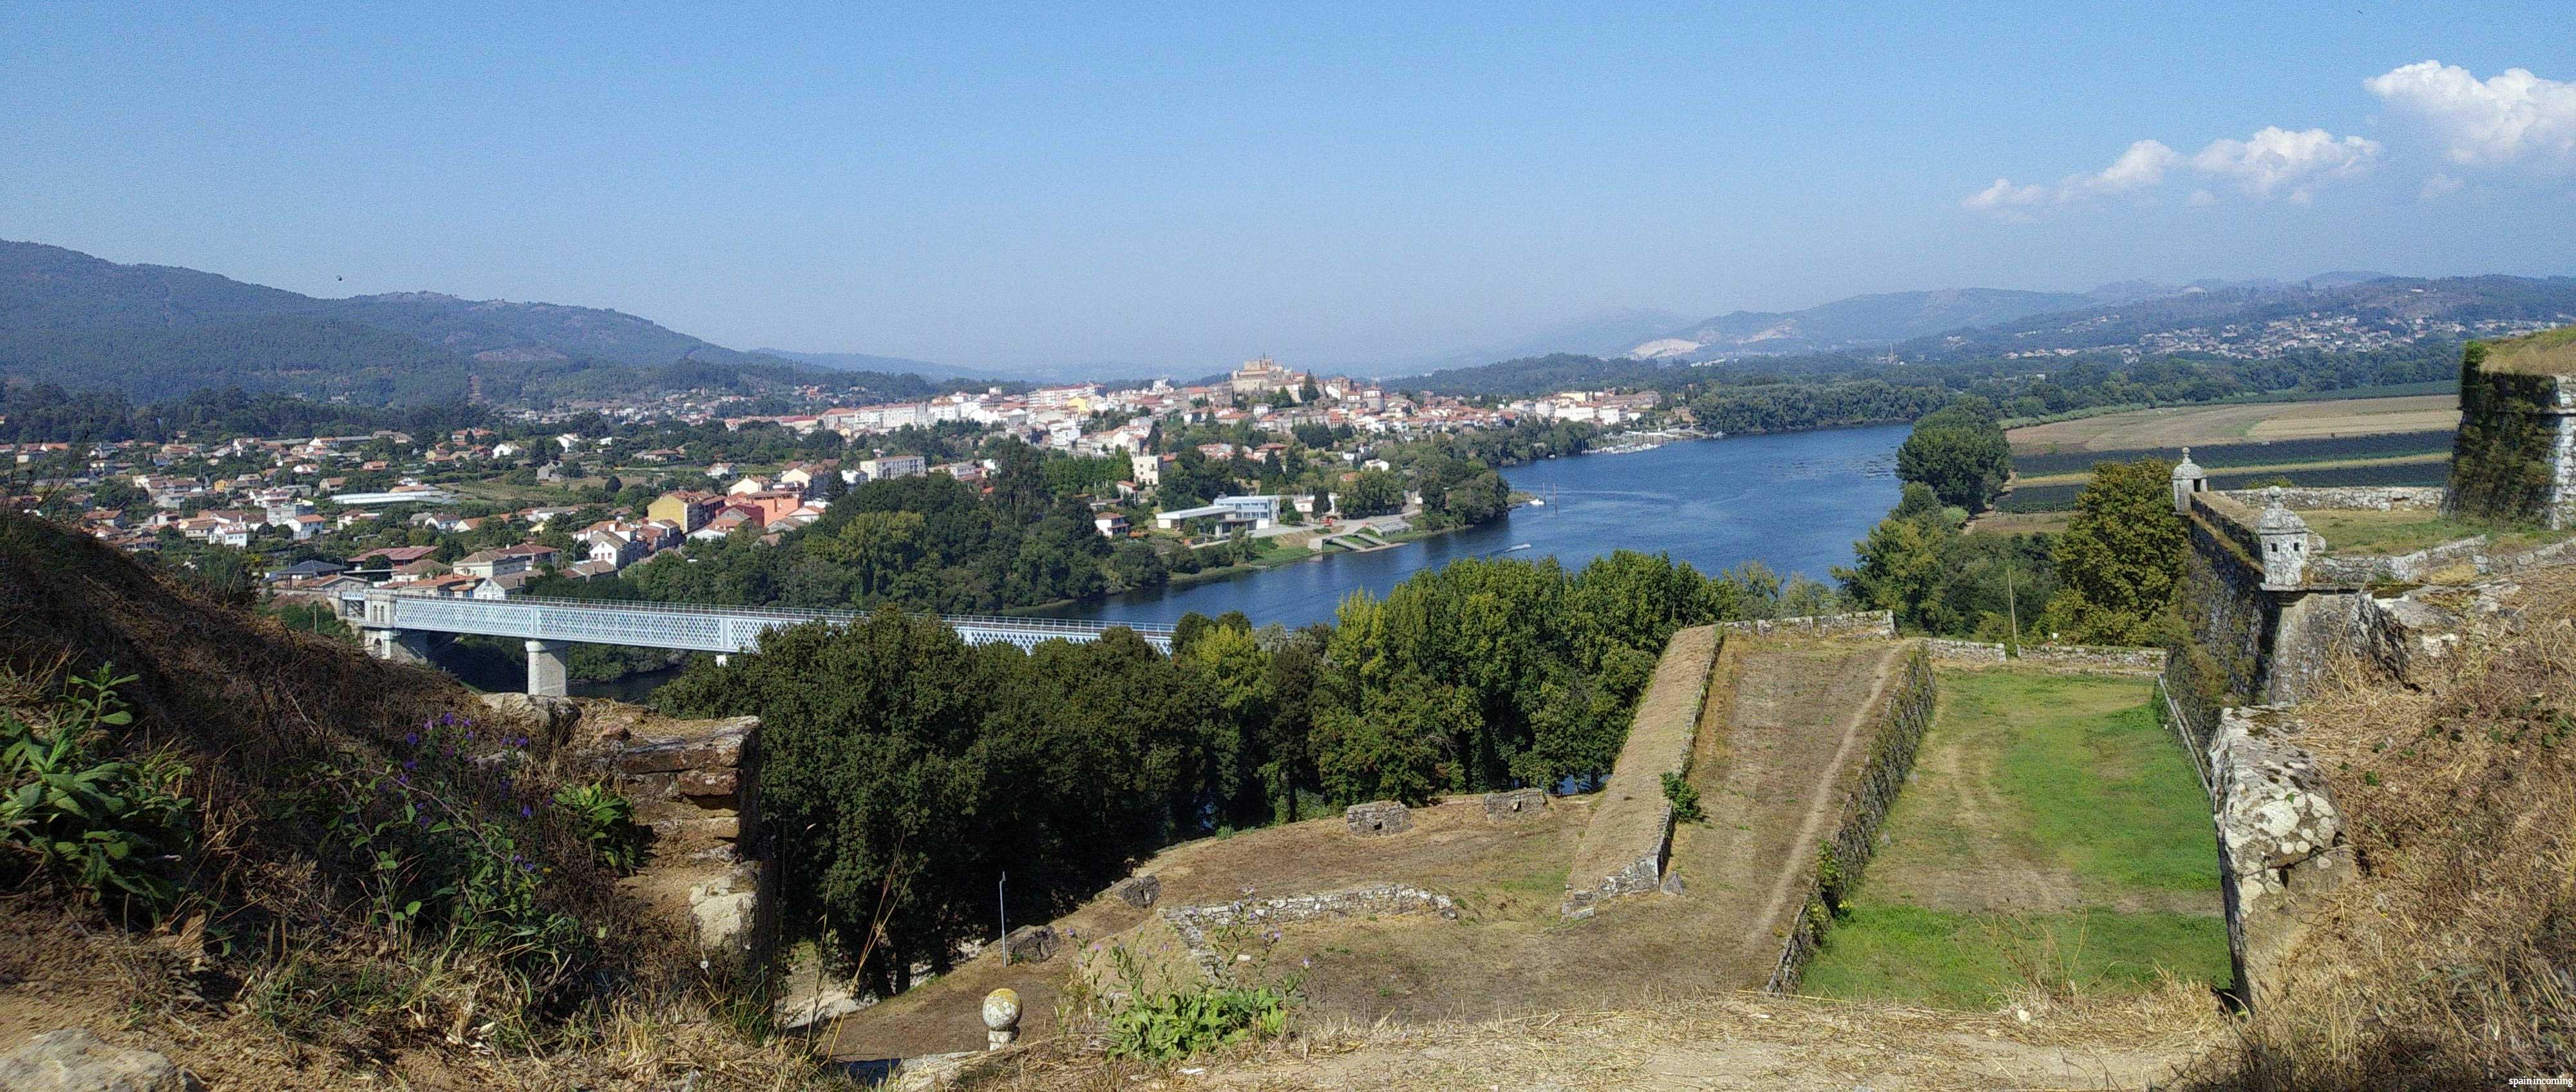 Nº 9 - Valença do Minho and its fortress